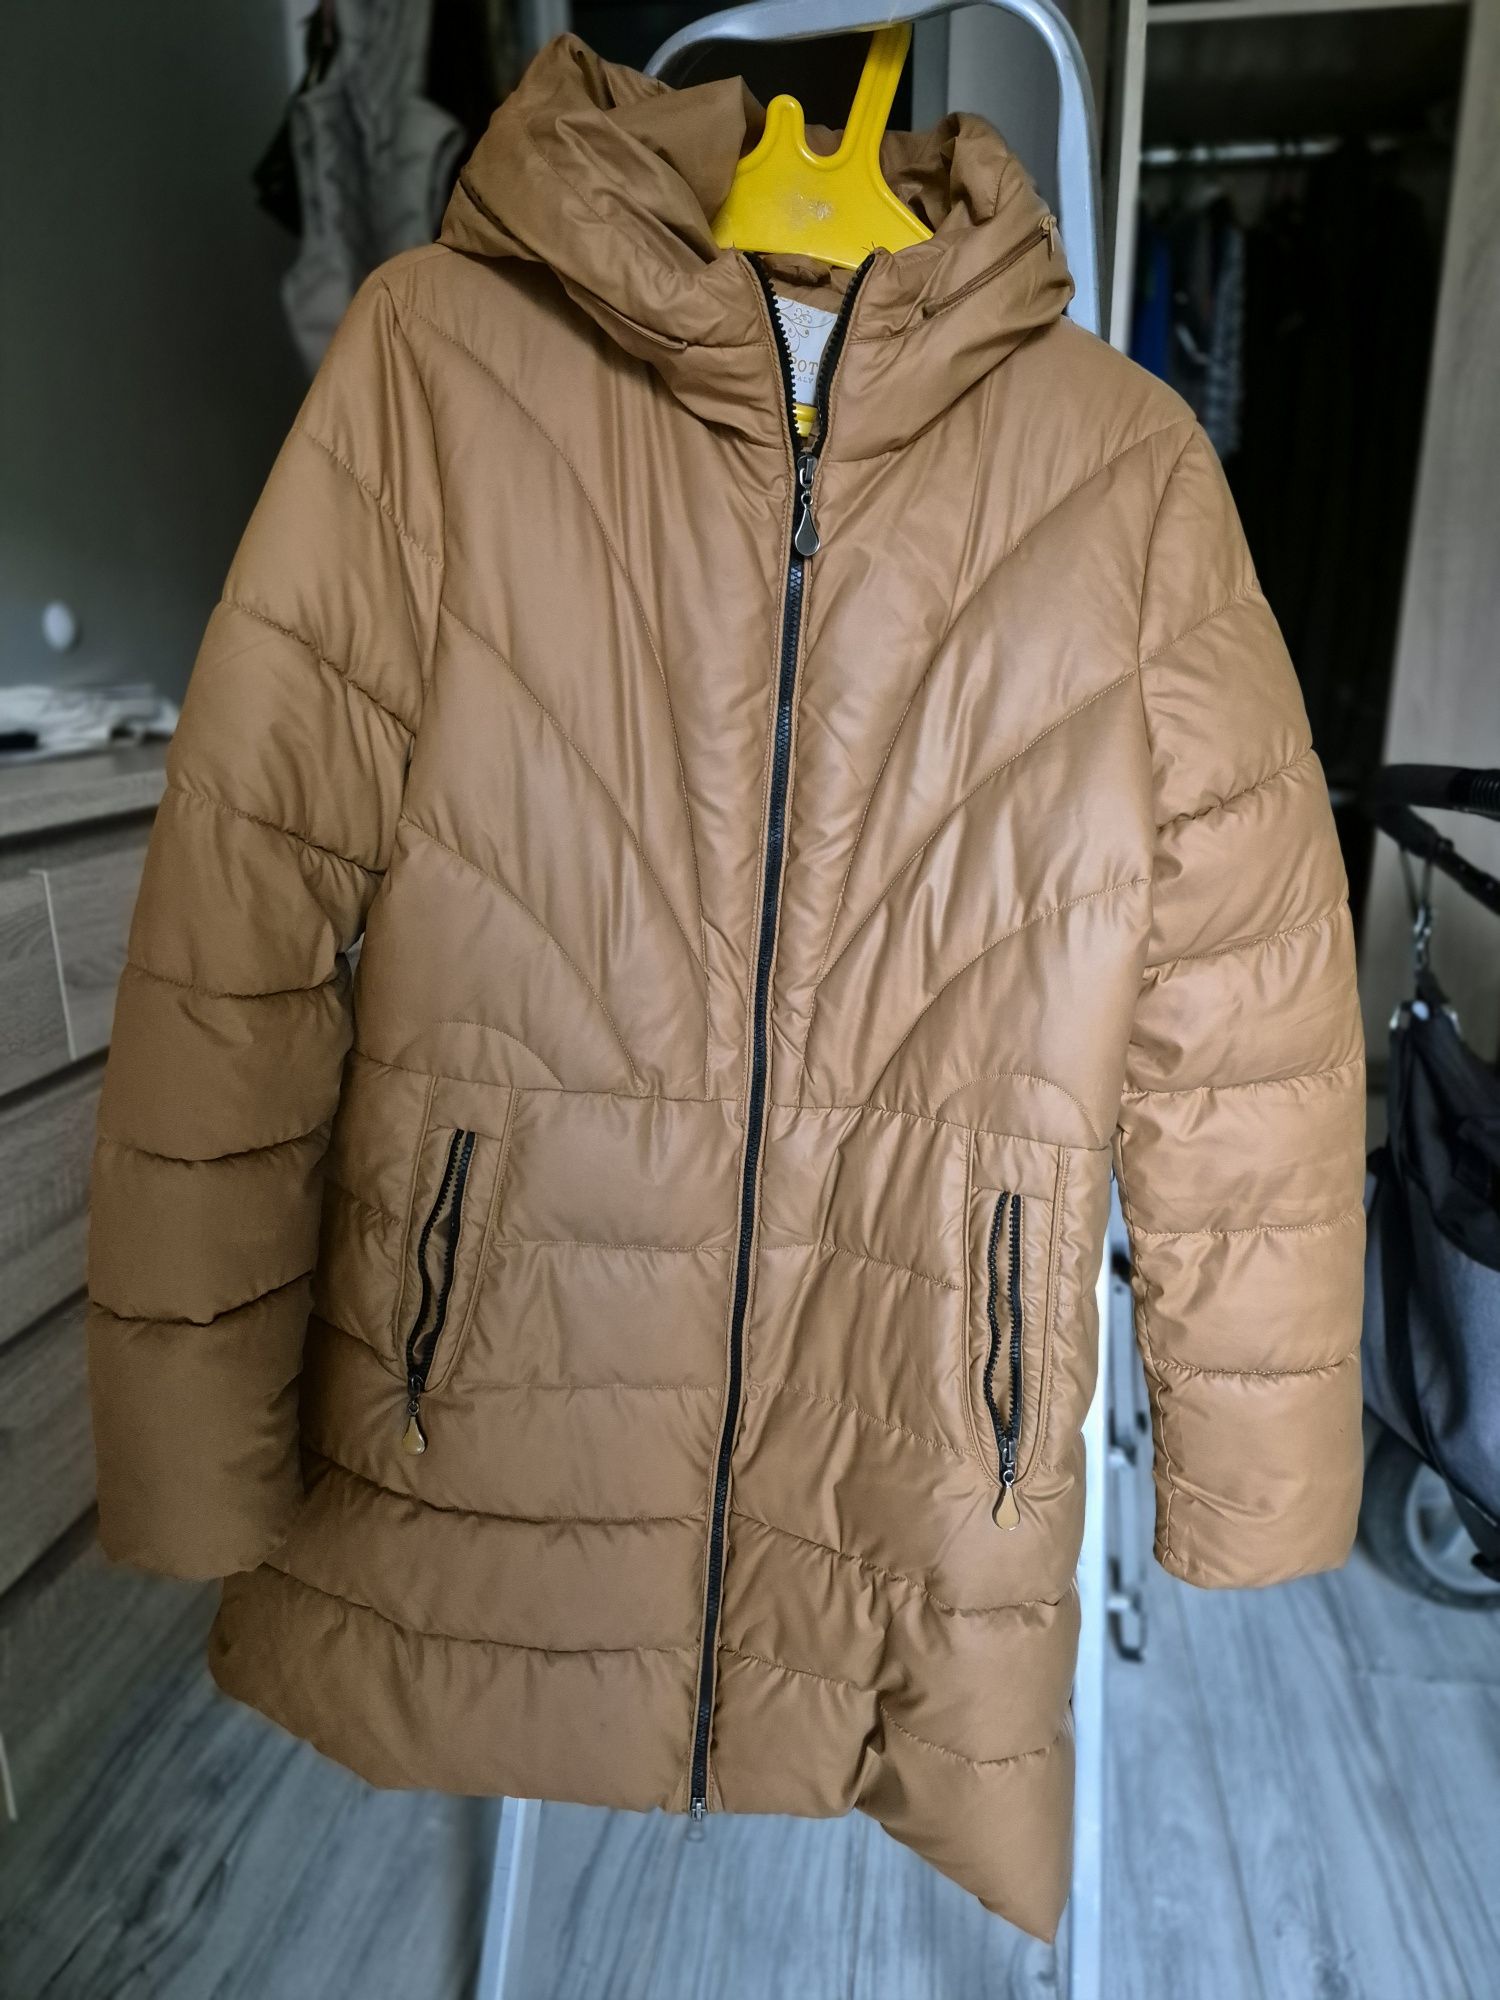 Carmelowa beżowa kurtka zimowa rozmiar L